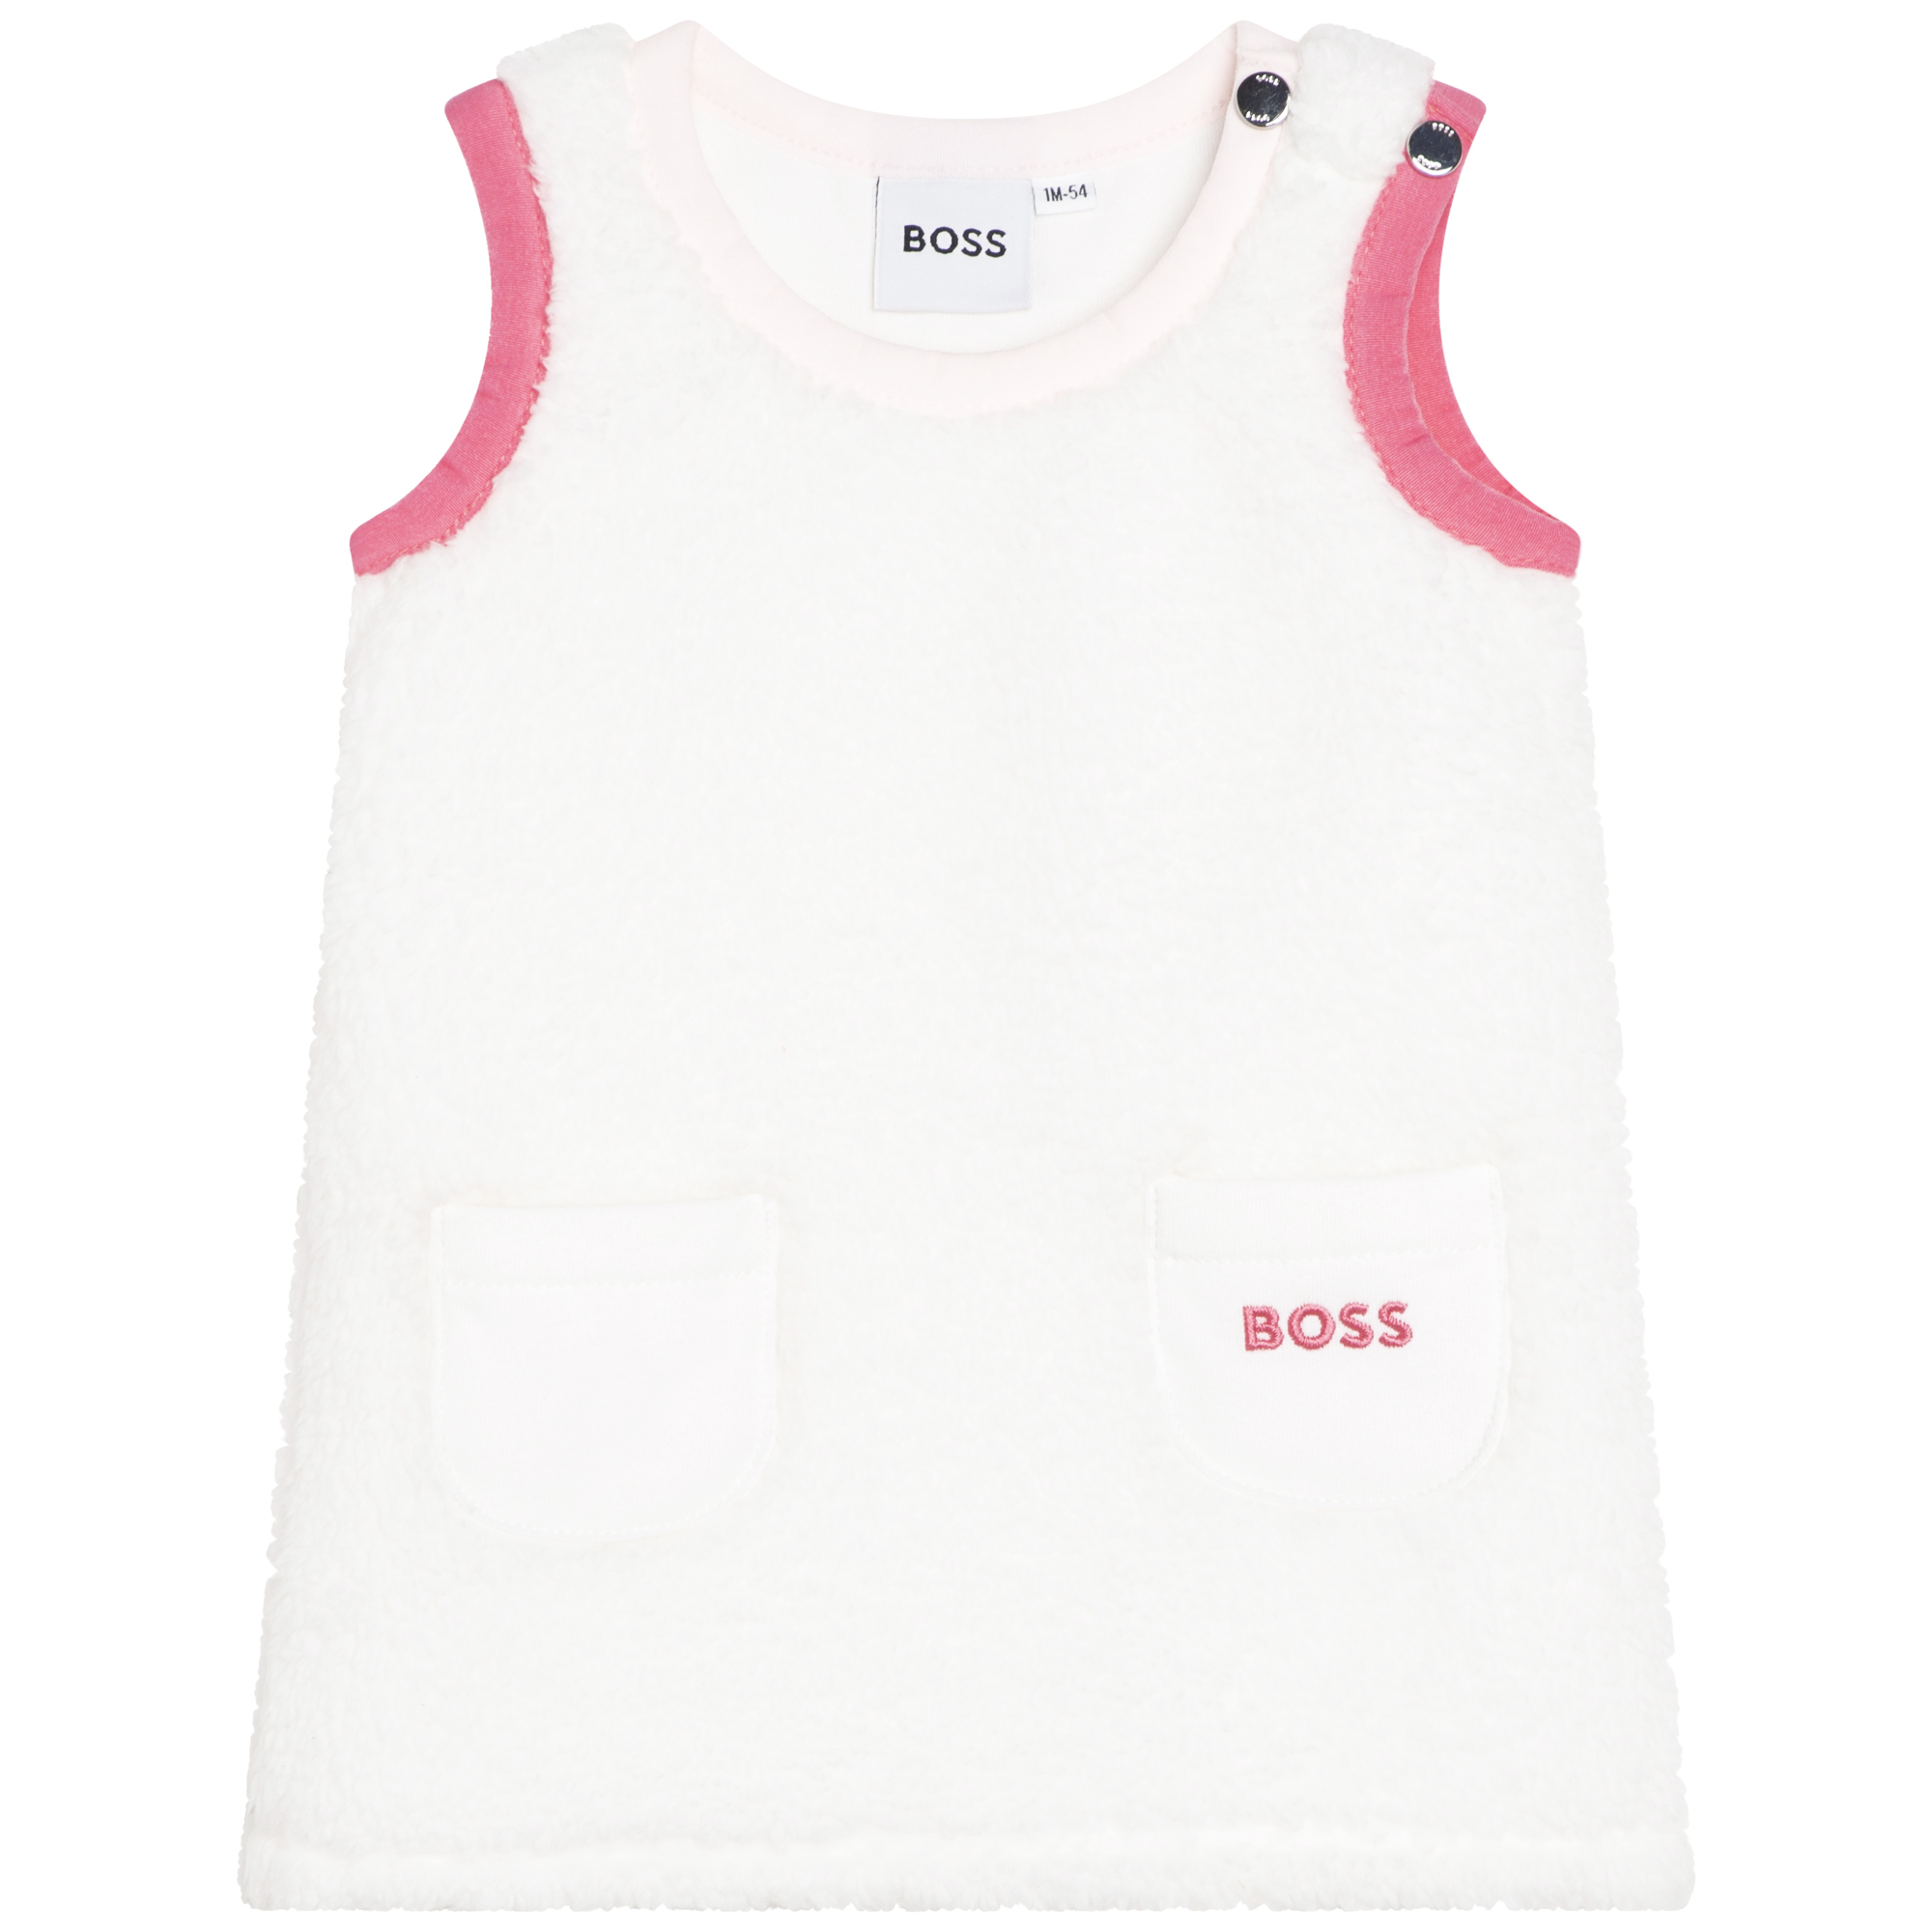 Completo vestito + T-shirt BOSS Per BAMBINA